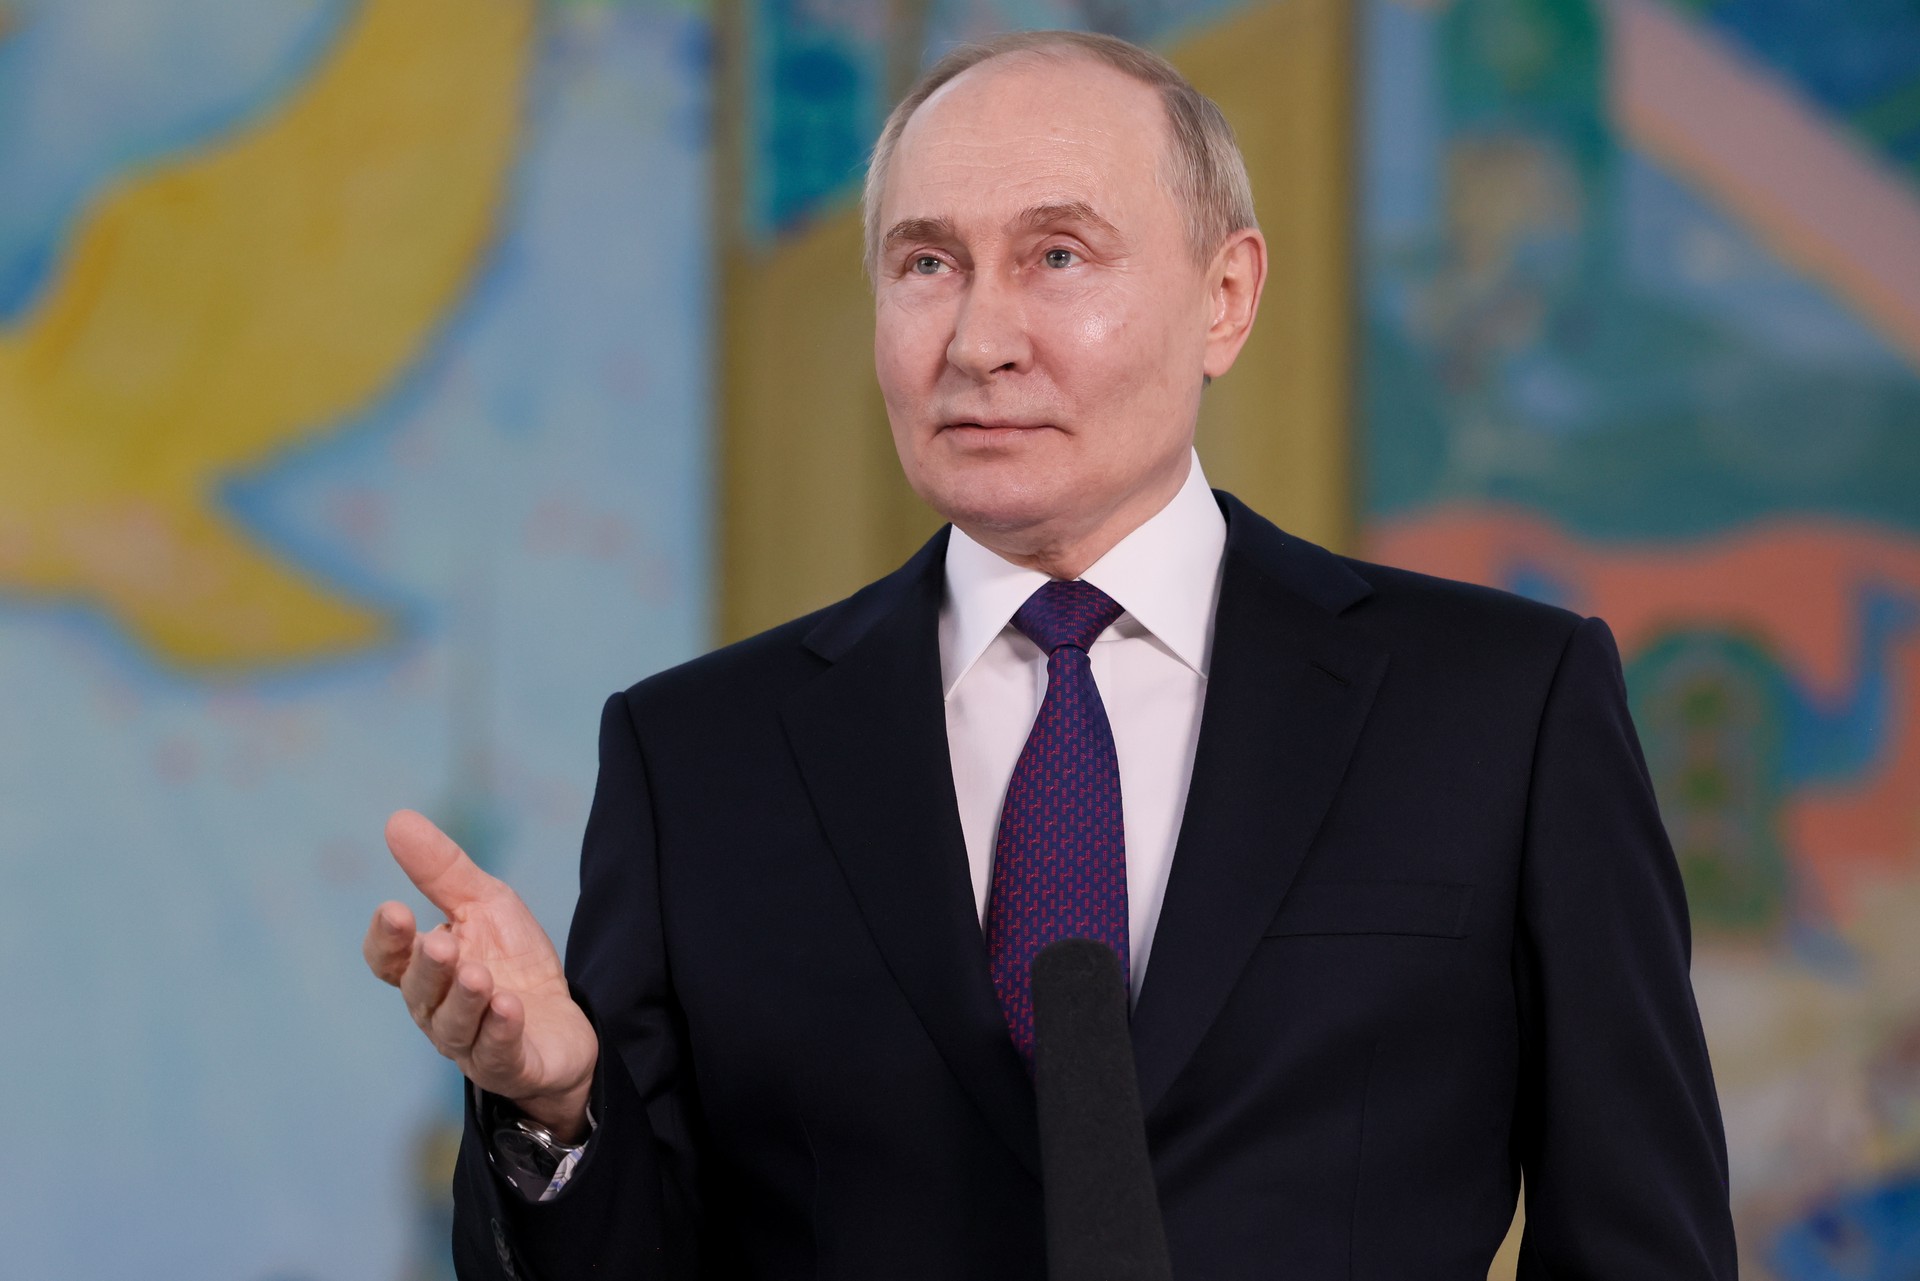 Уотерхаус: На Западе нервничают из-за предупреждения Путина об ударах по РФ